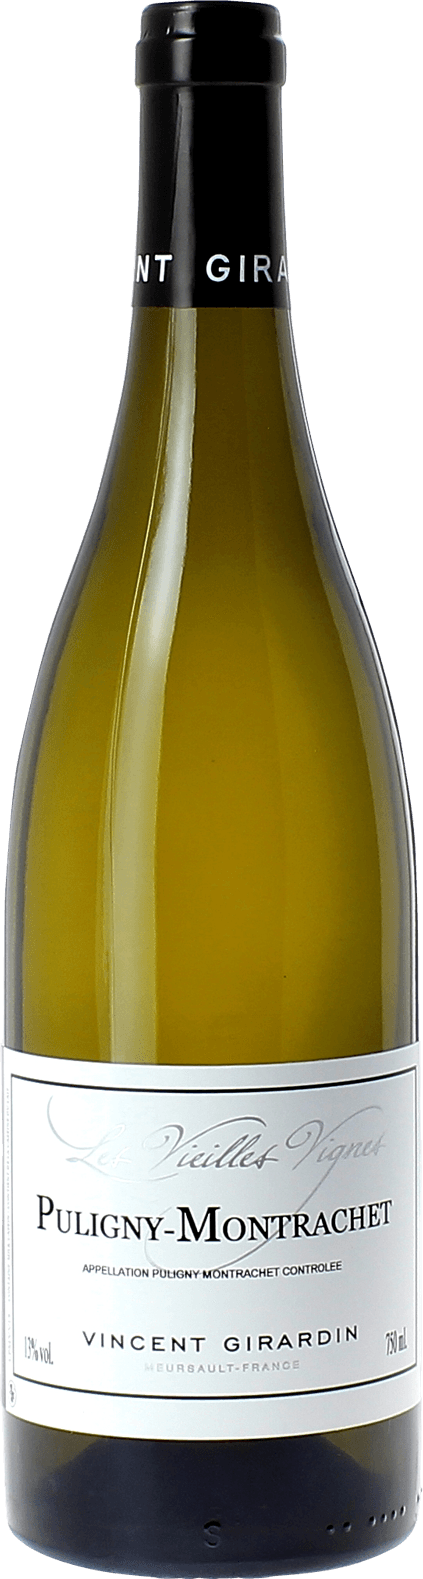 Puligny montrachet vieilles vignes 2016 Domaine GIRARDIN Vincent, Bourgogne blanc